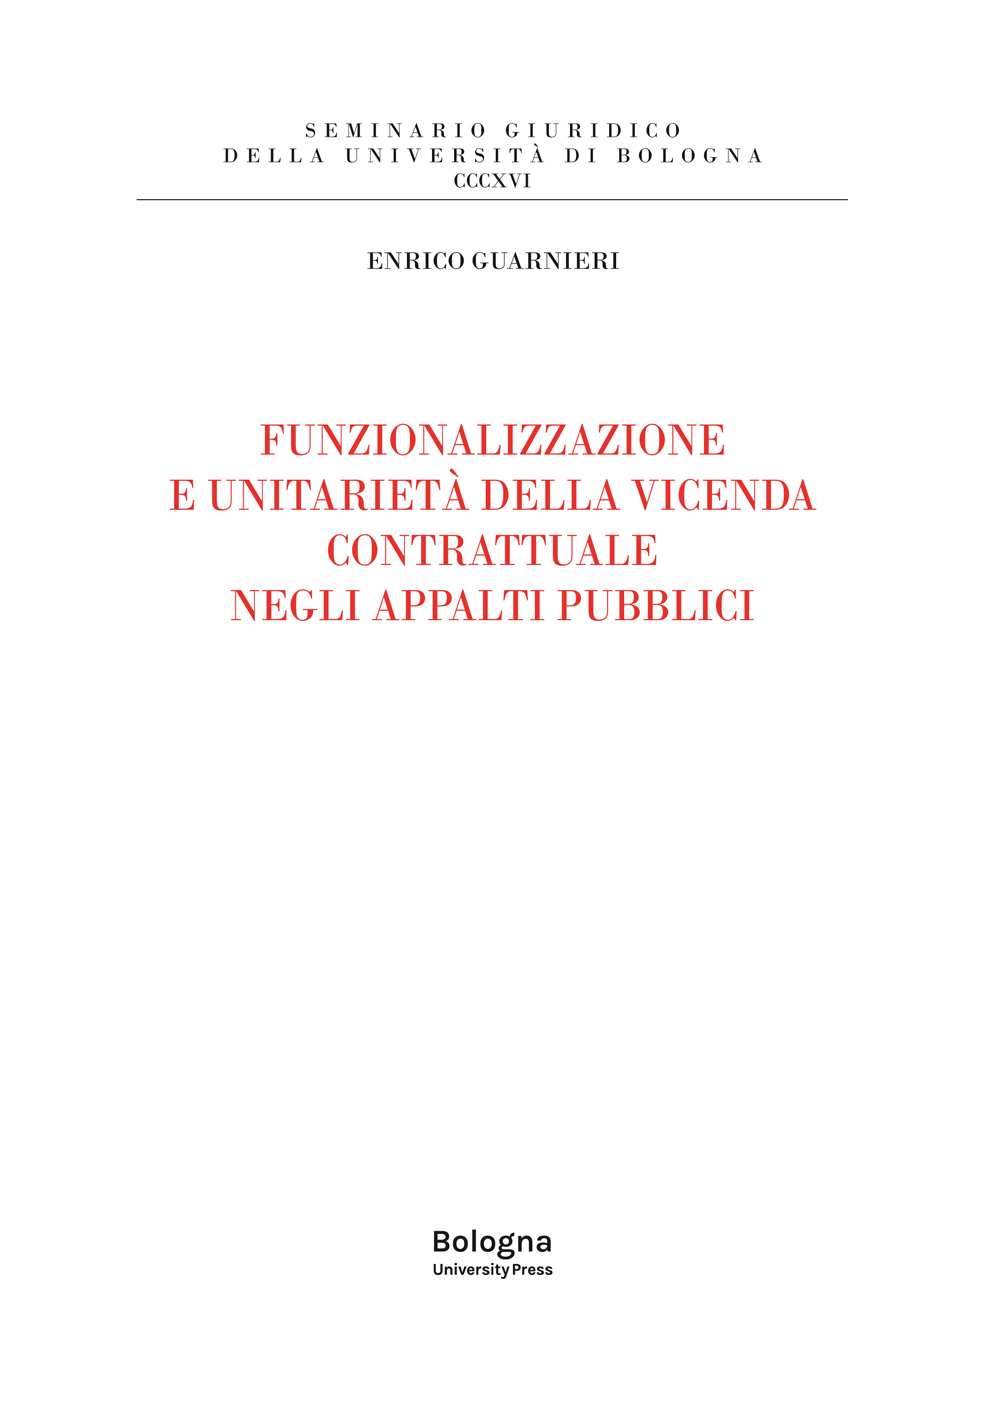 Funzionalizzazione e unitarietà della vicenda contrattuale negli appalti pubblici - Bologna University Press